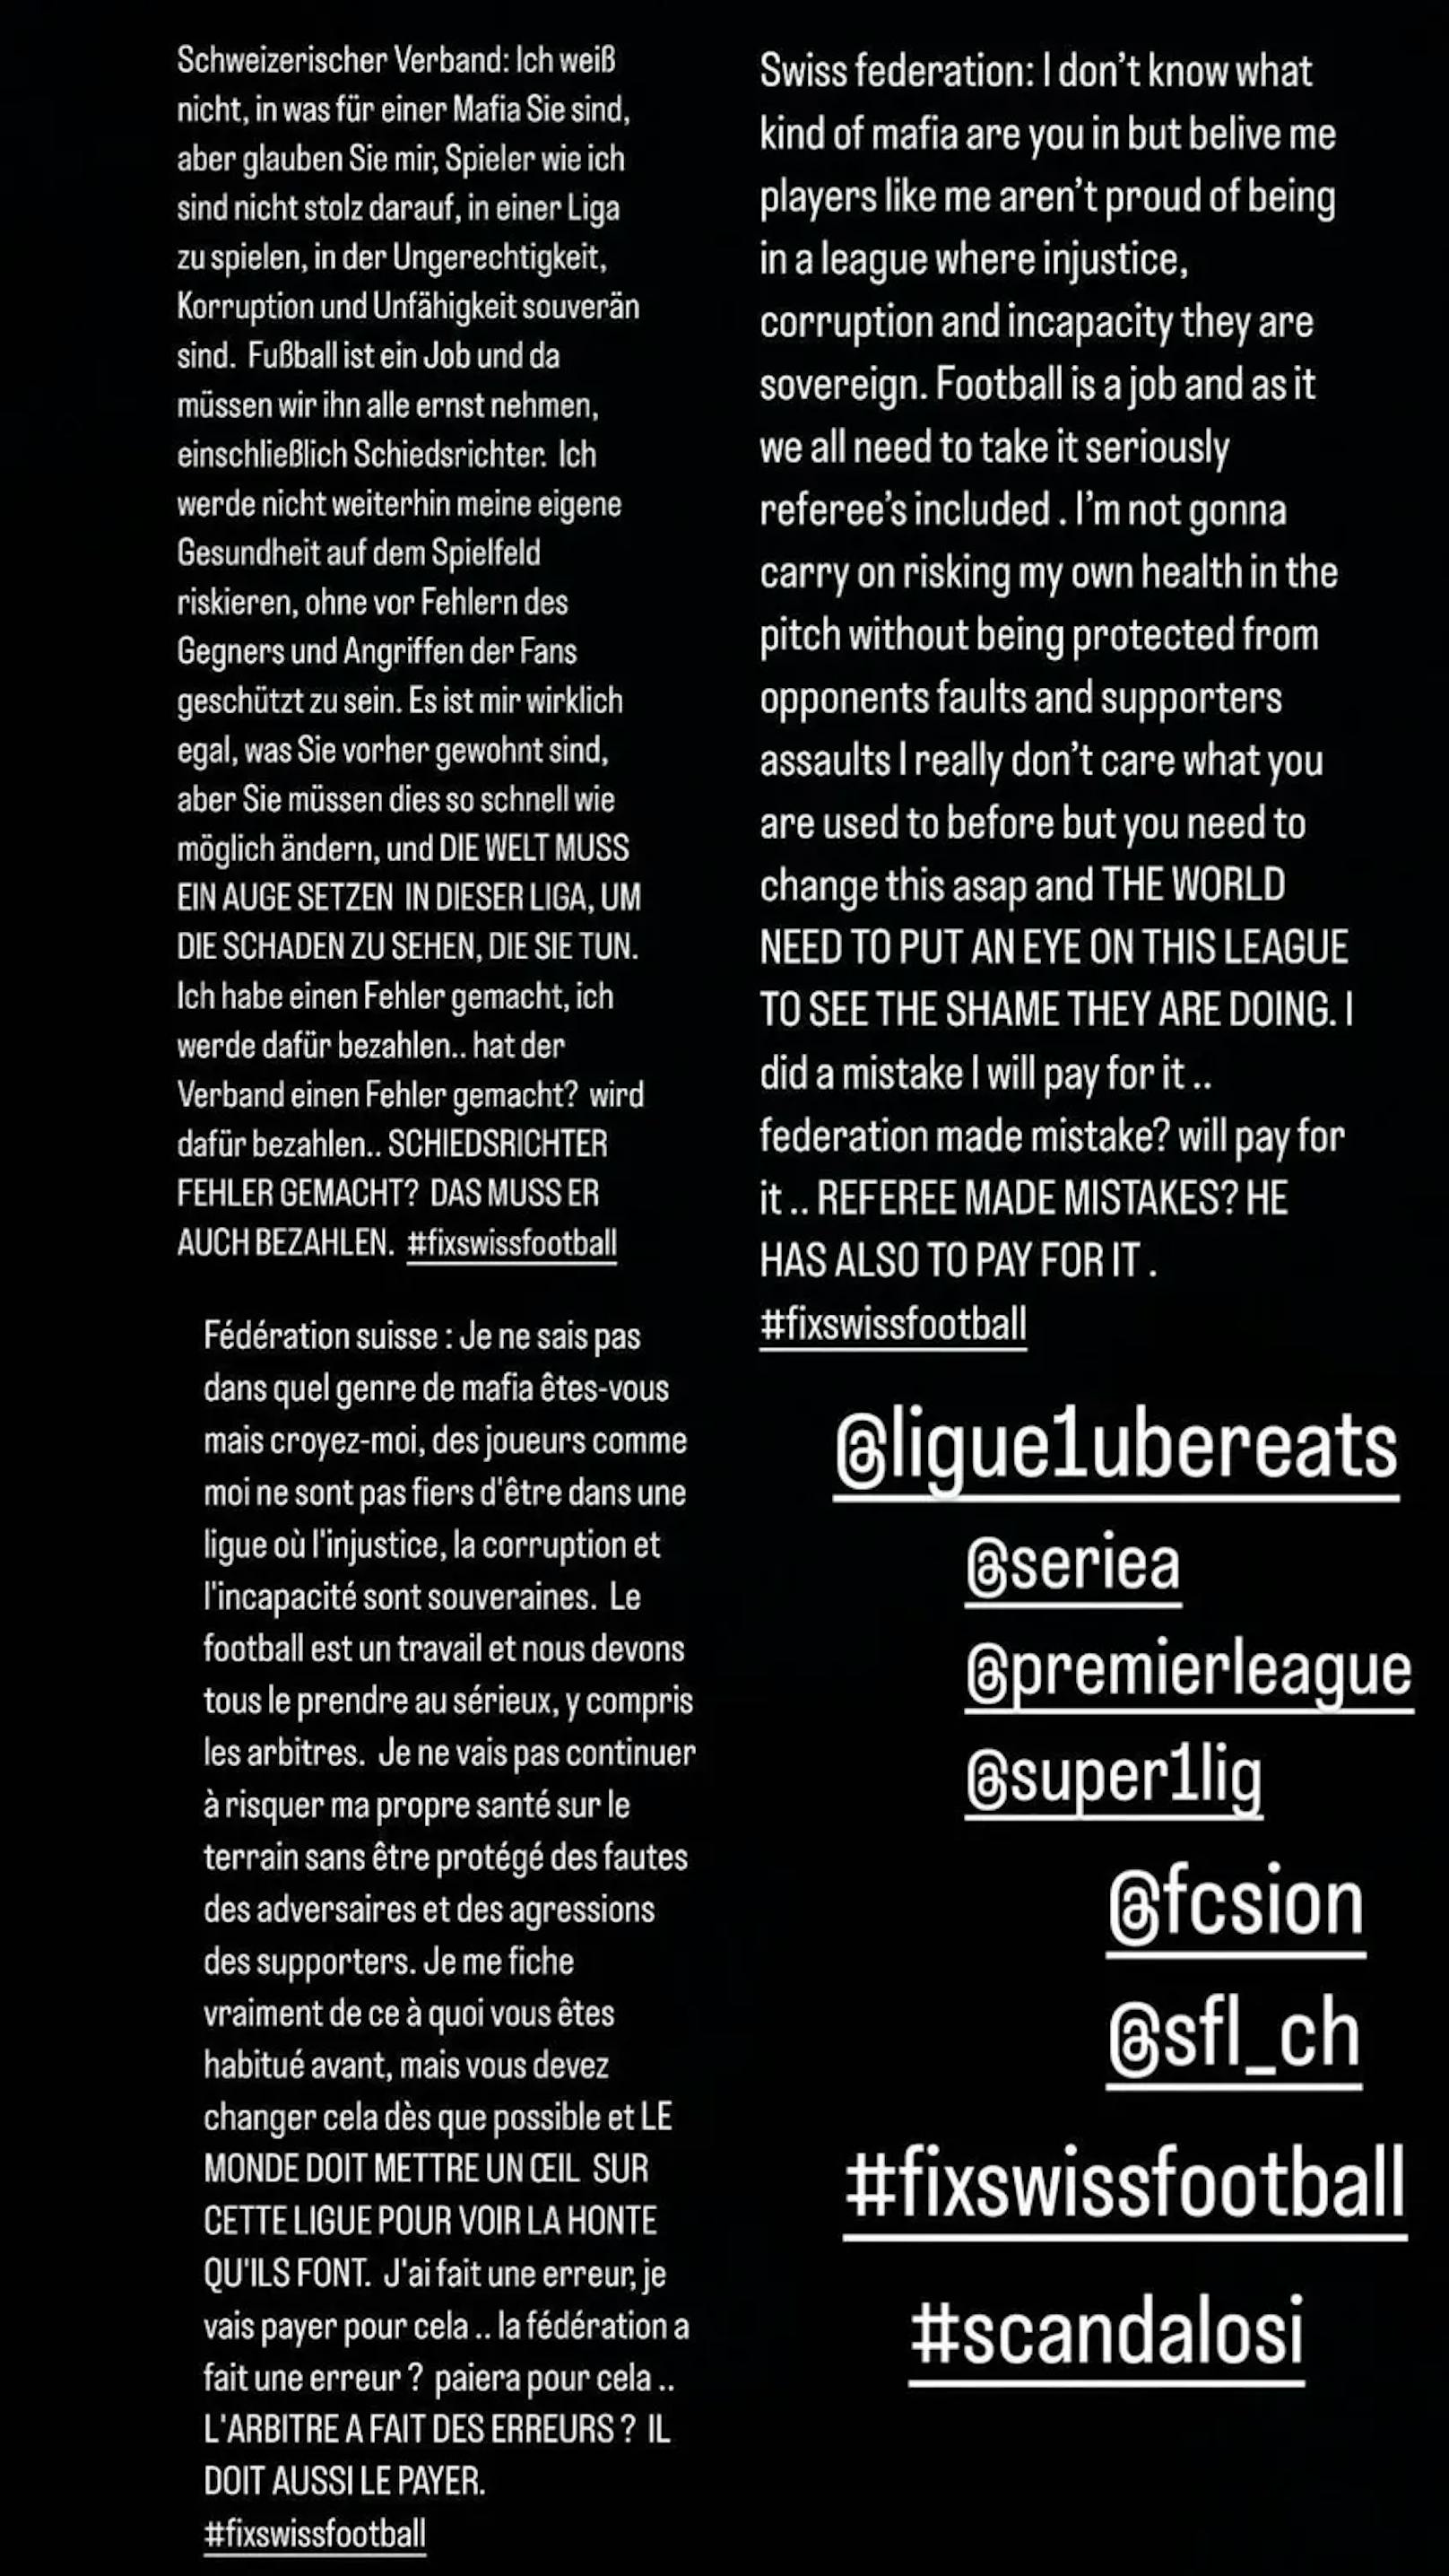 Der Balotelli-Wutbrief auf Instagram